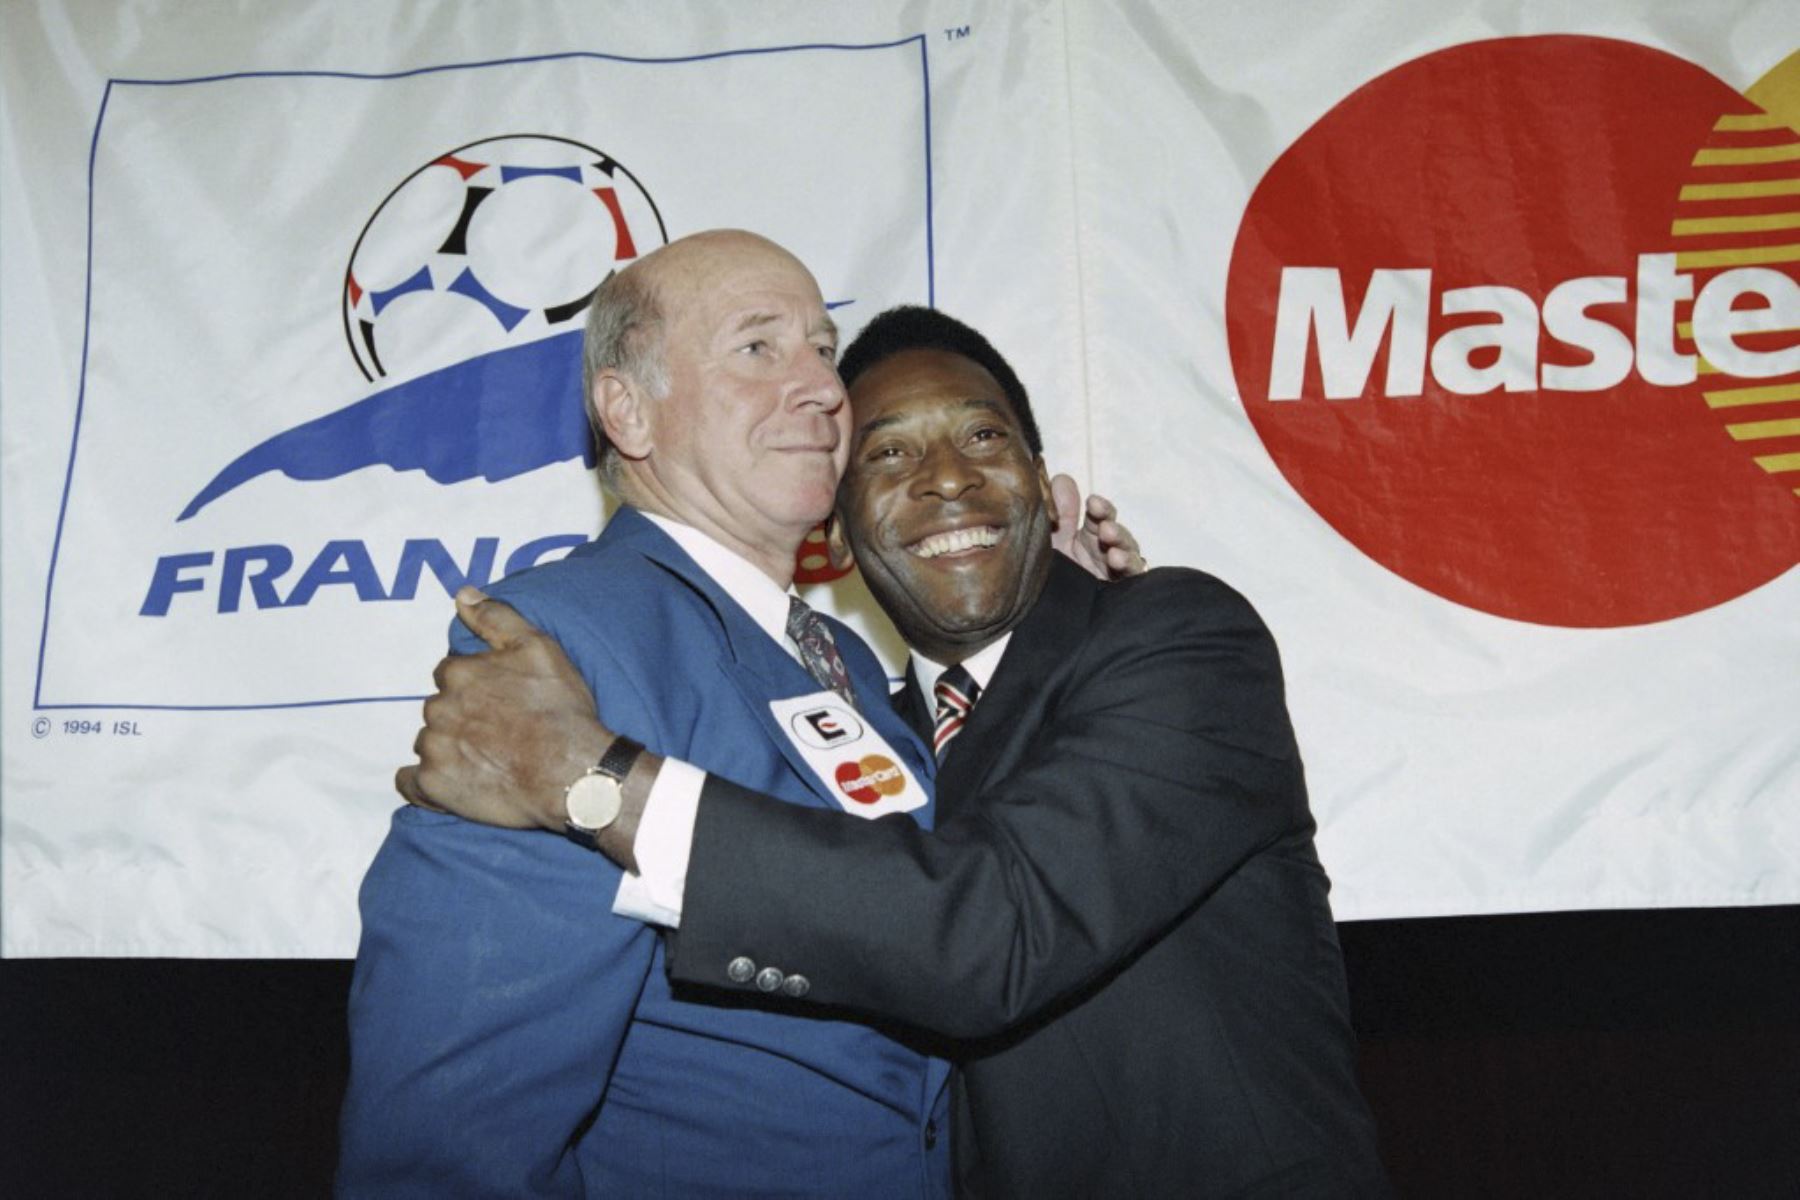 Las leyendas del fútbol, ​​el inglés Bobby Charlton (izquierda) y el ministro brasileño de Deportes, Pelé, se abrazan el 9 de febrero de 1995 en París, donde se conocieron durante los preparativos para la Copa del Mundo de 1998

Foto:AFP